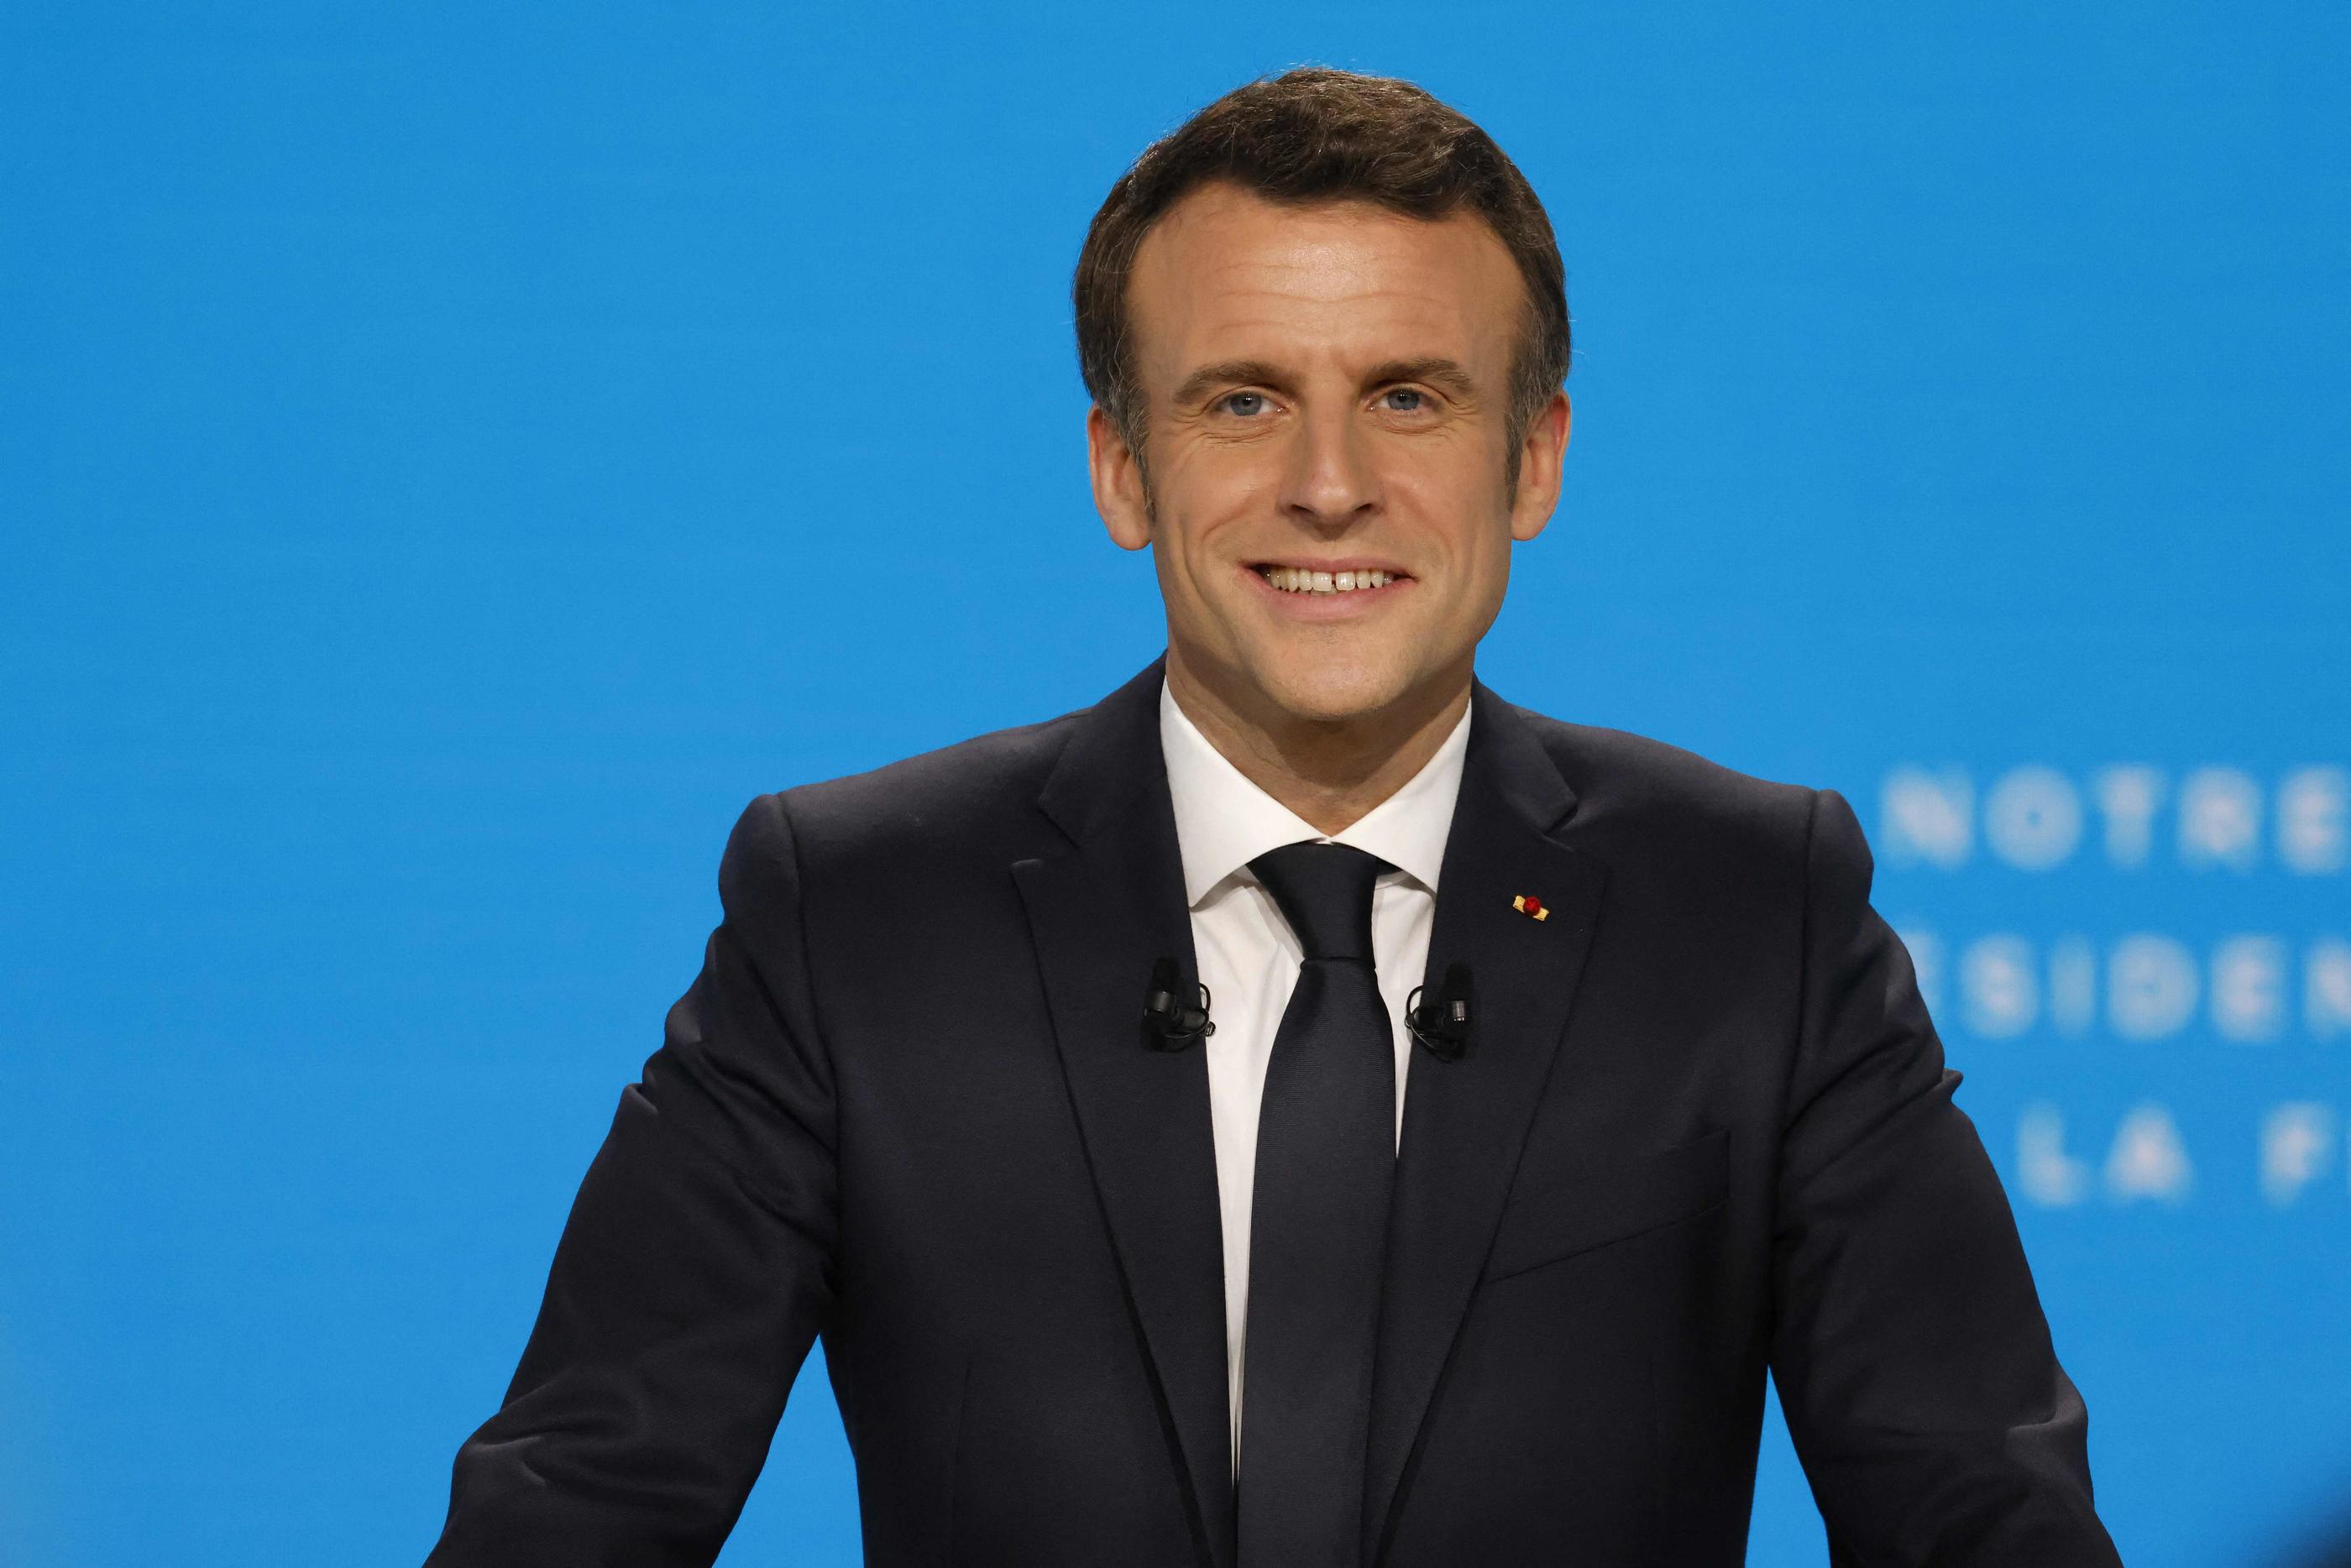 À moins d’un imprévu de dernière minute sur la scène internationale, le candidat président sera présent au JT du « 19.45 » le 23 mars. AFP/Ludovic MARIN